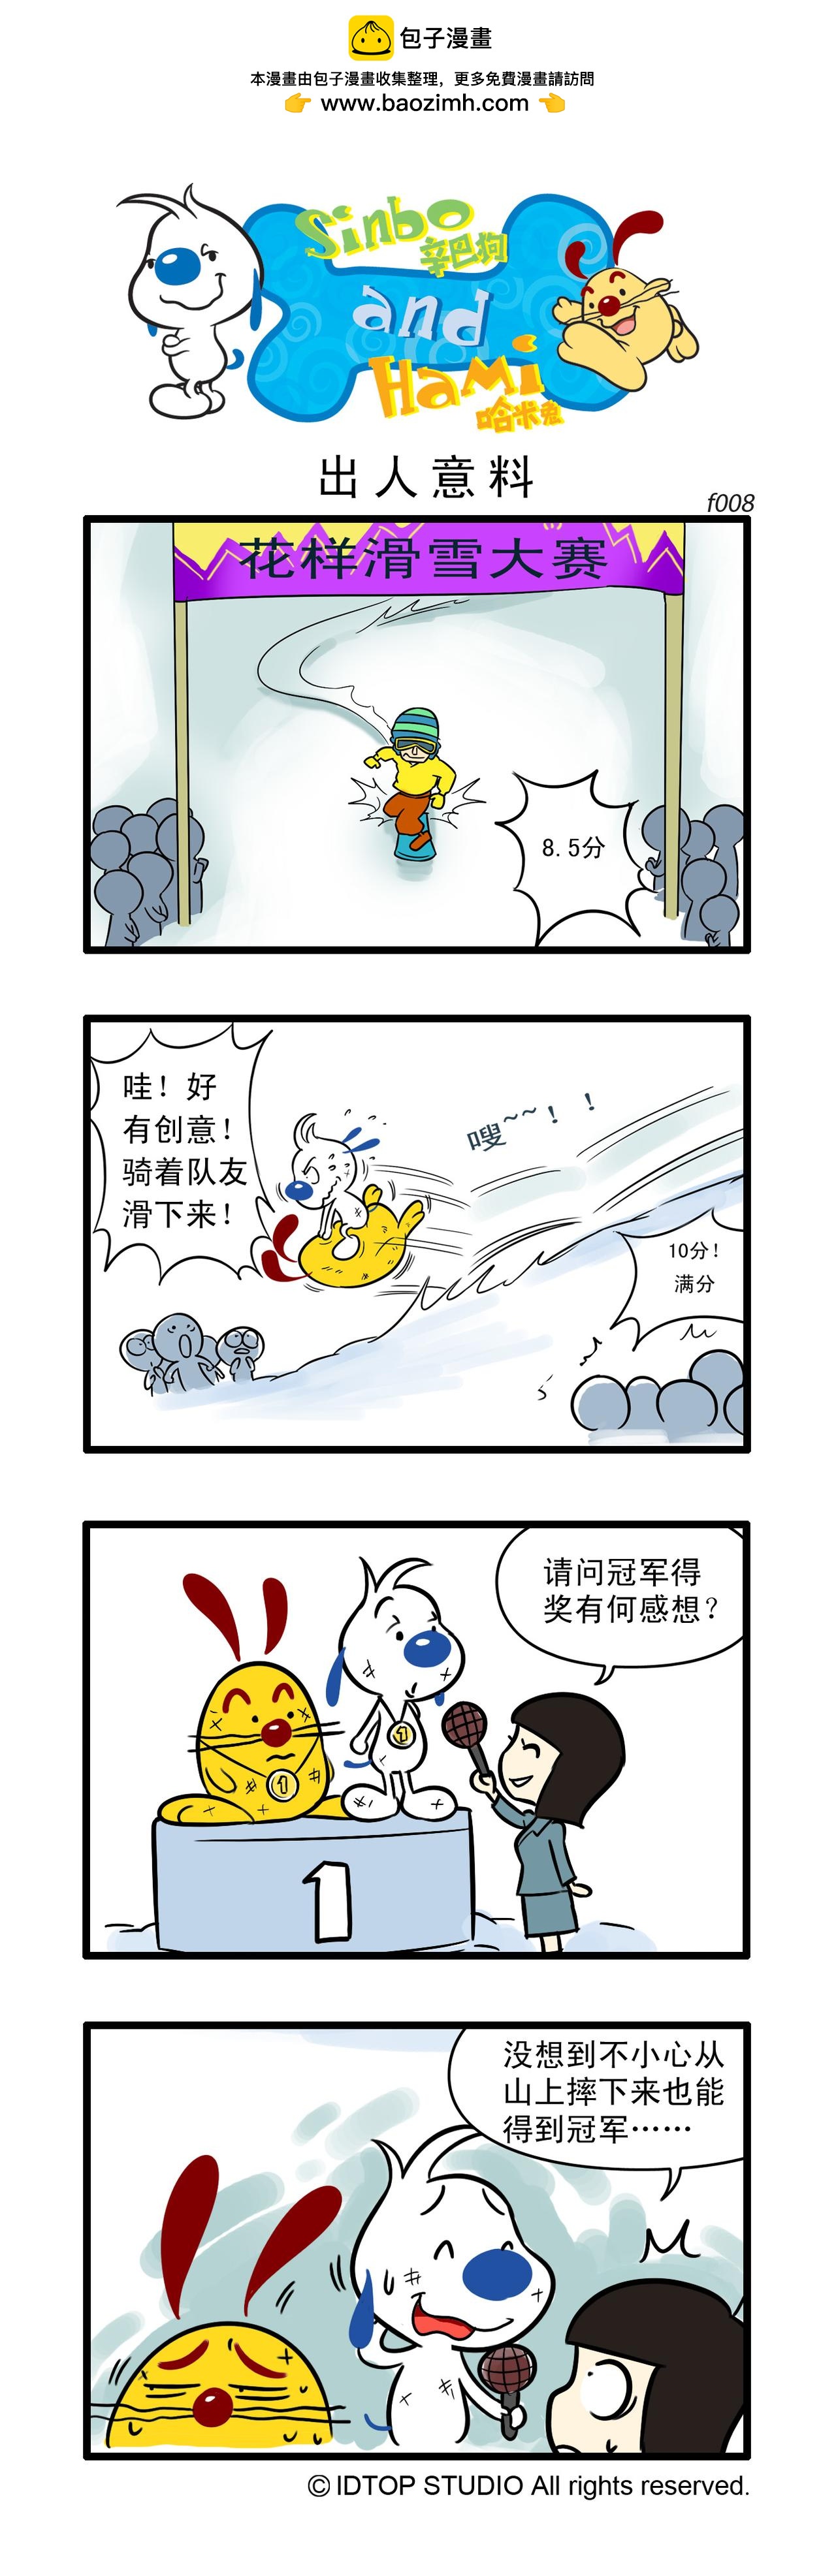 辛巴狗日常漫畫 - 多格3 - 1